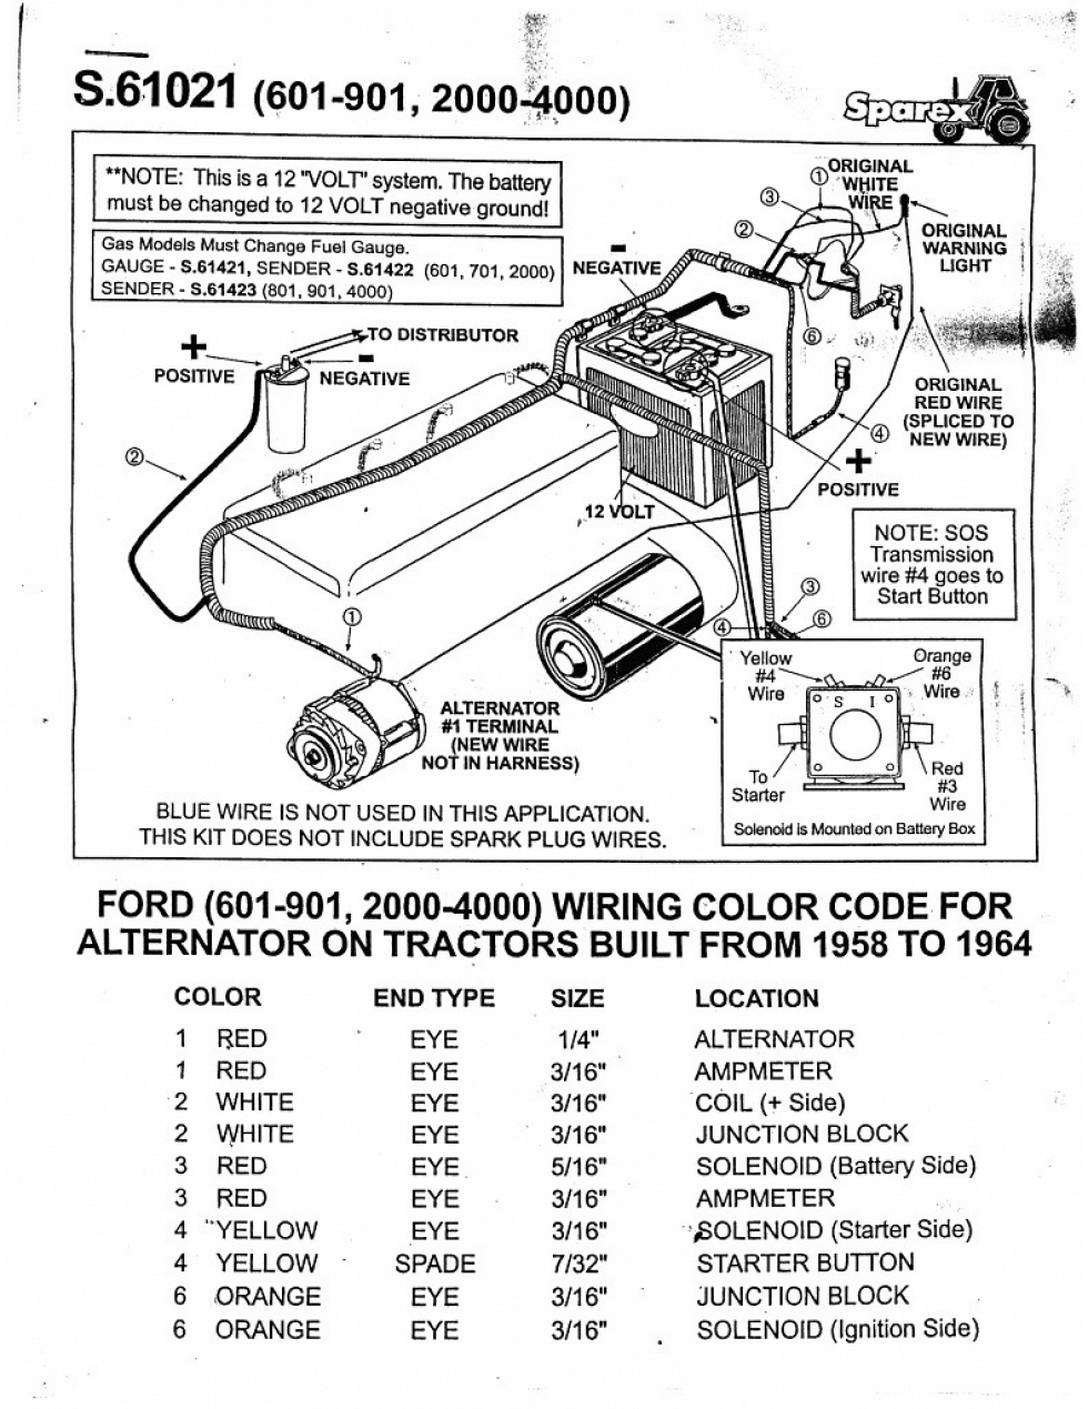 Ford 8N Tractor Wiring Diagram | Wiring Diagram - 8N Ford Tractor Wiring Diagram 6 Volt